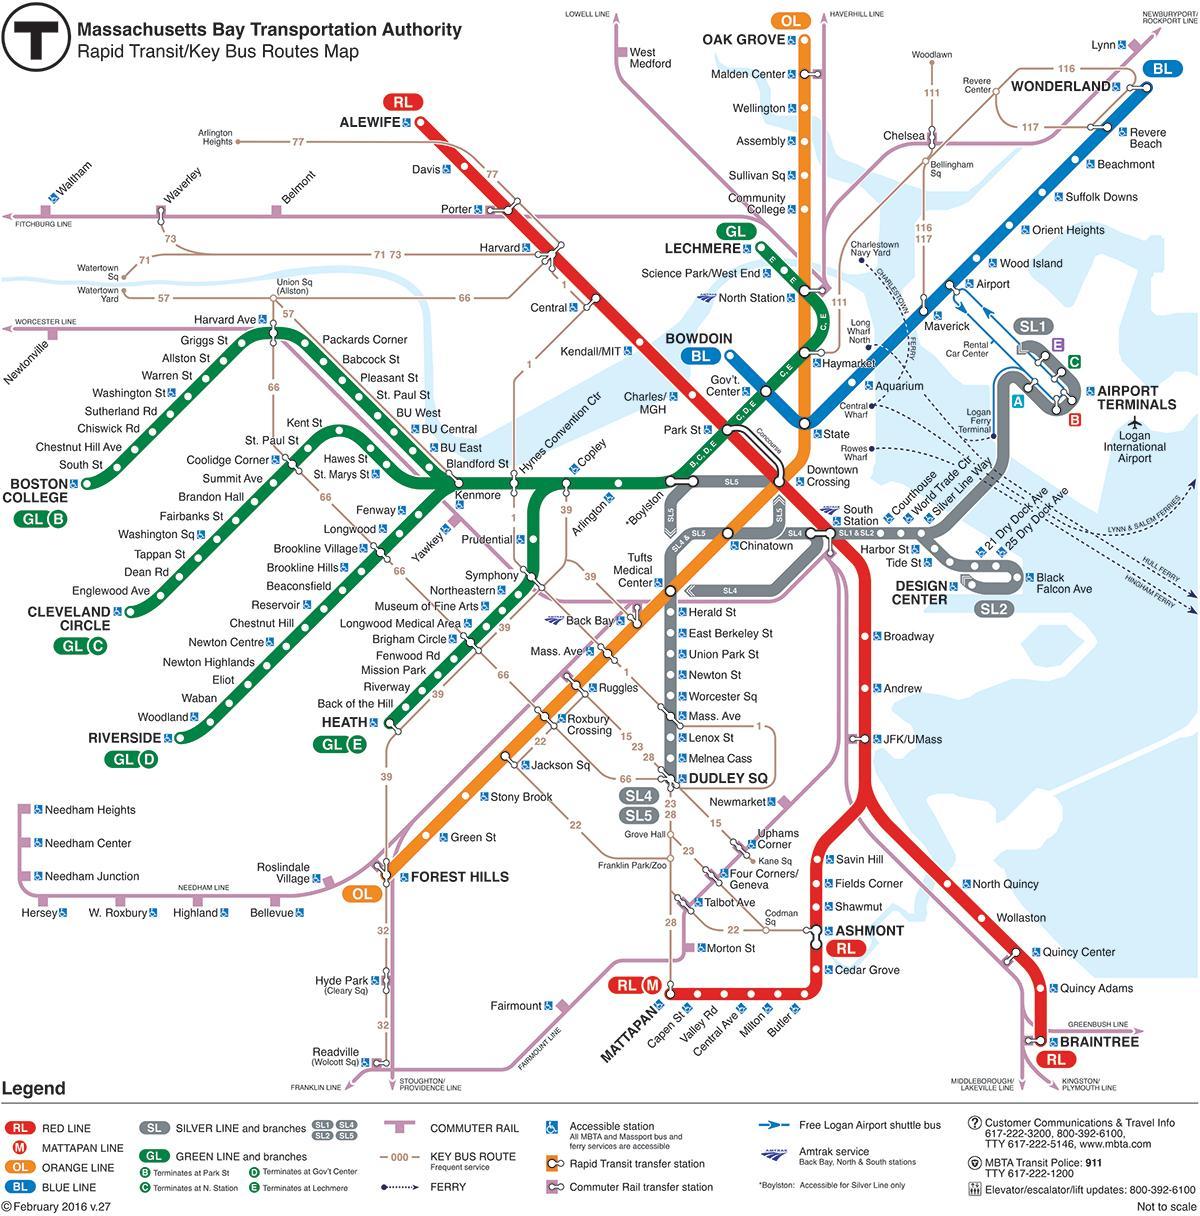 MBTA नक्शा लाल रेखा